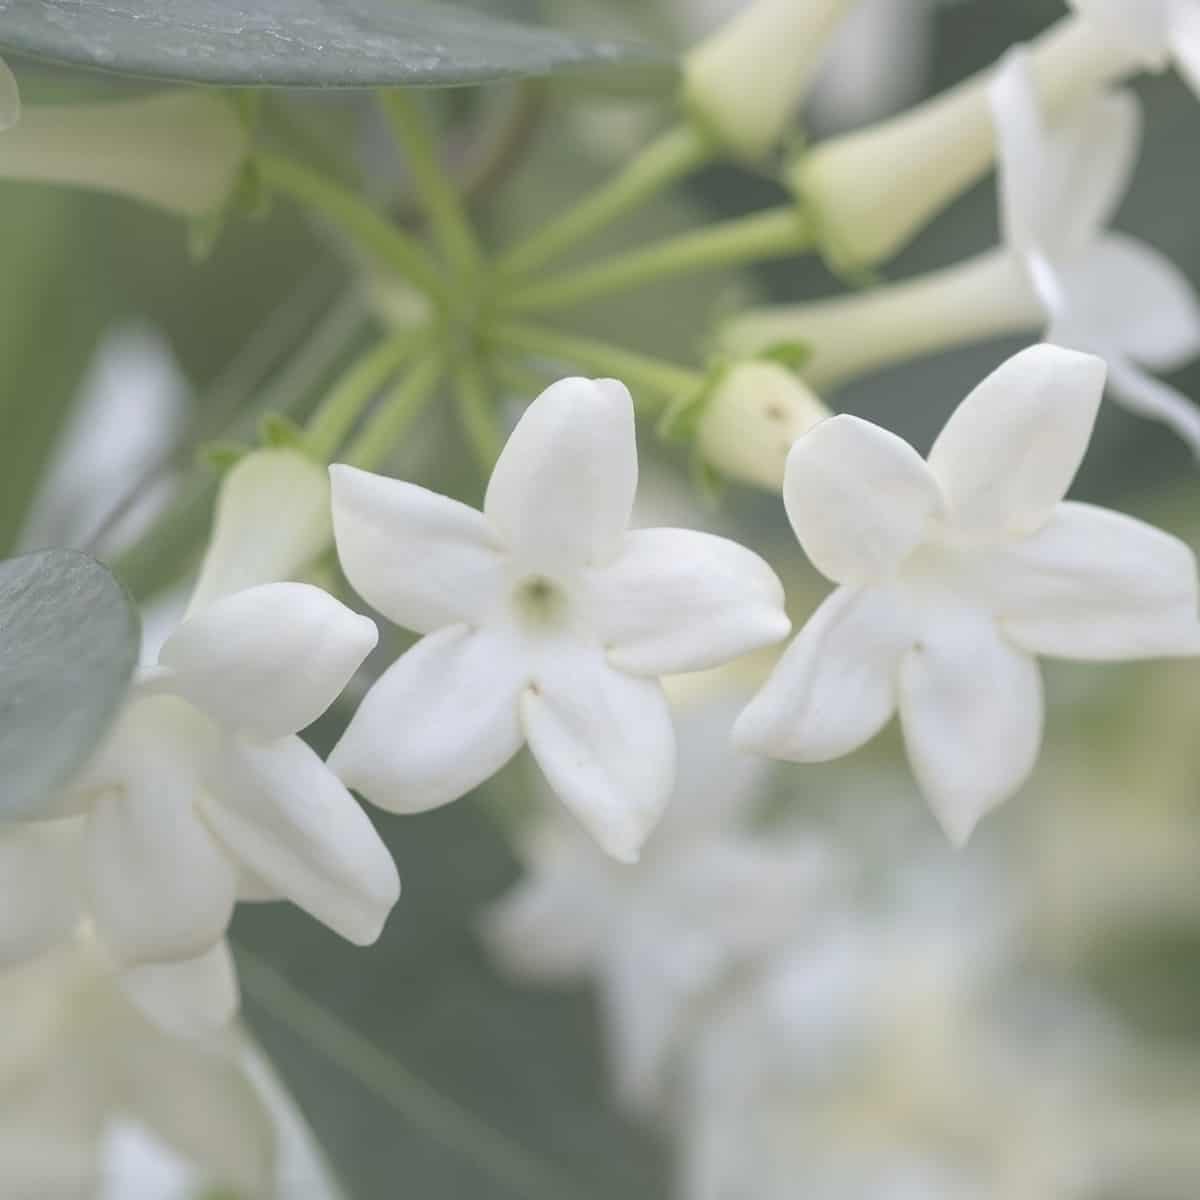 the Madagascar jasmine has a sweet fragrance